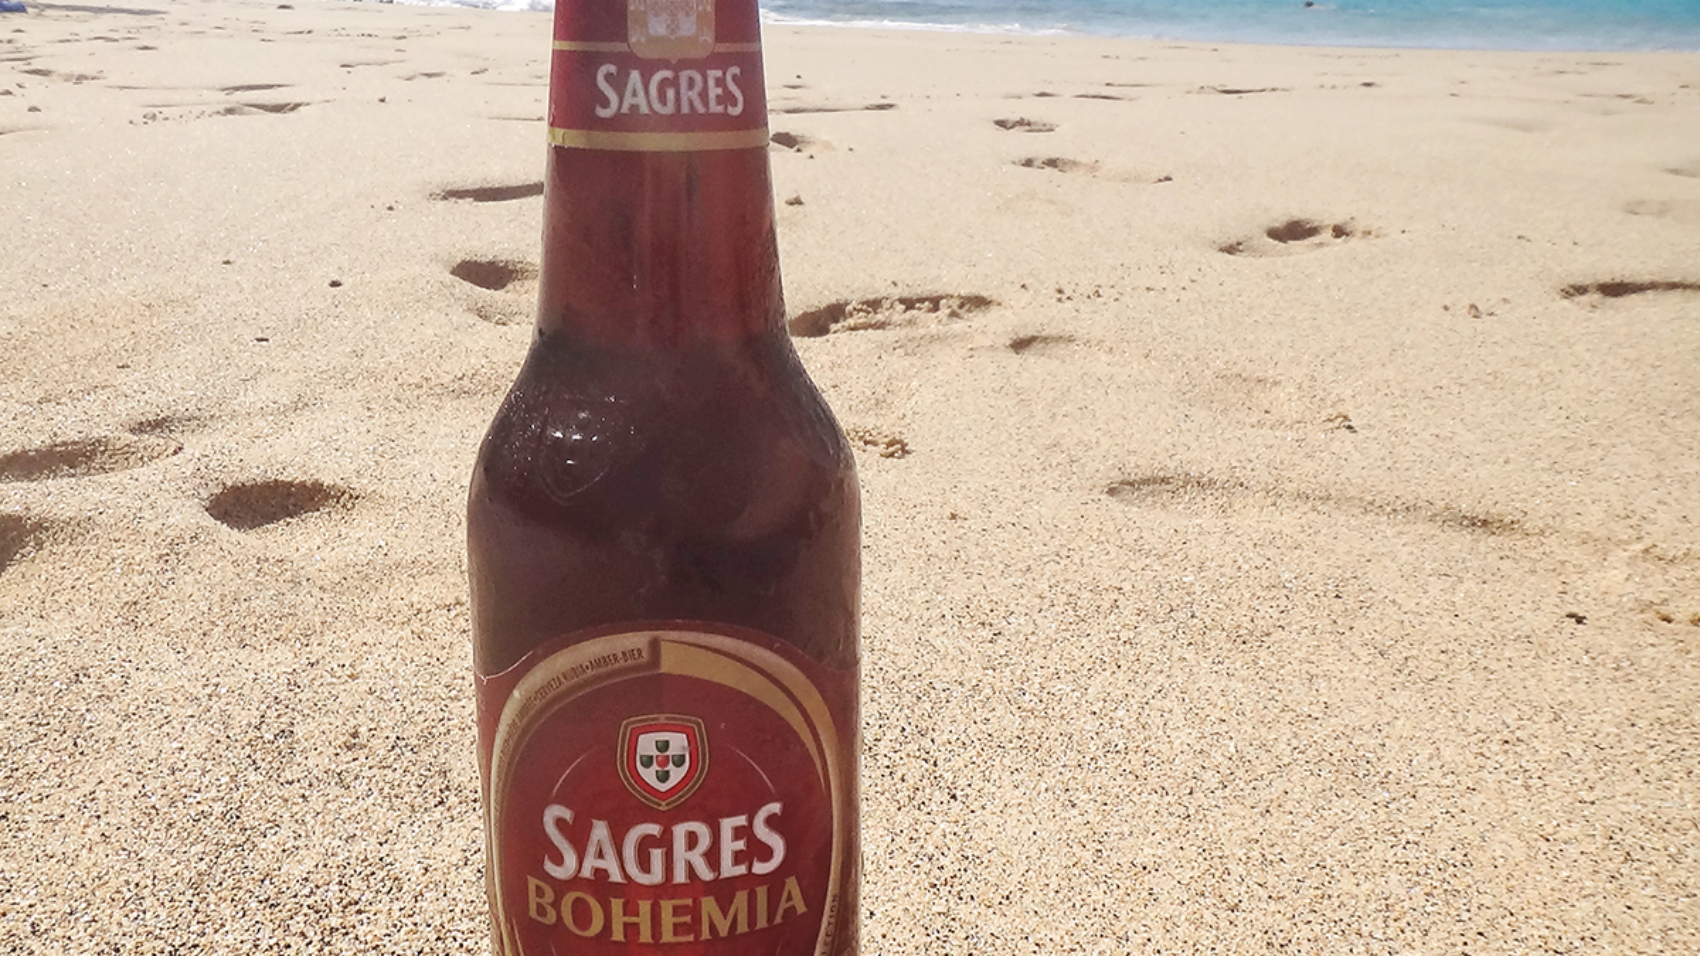 Sagres beer & beach